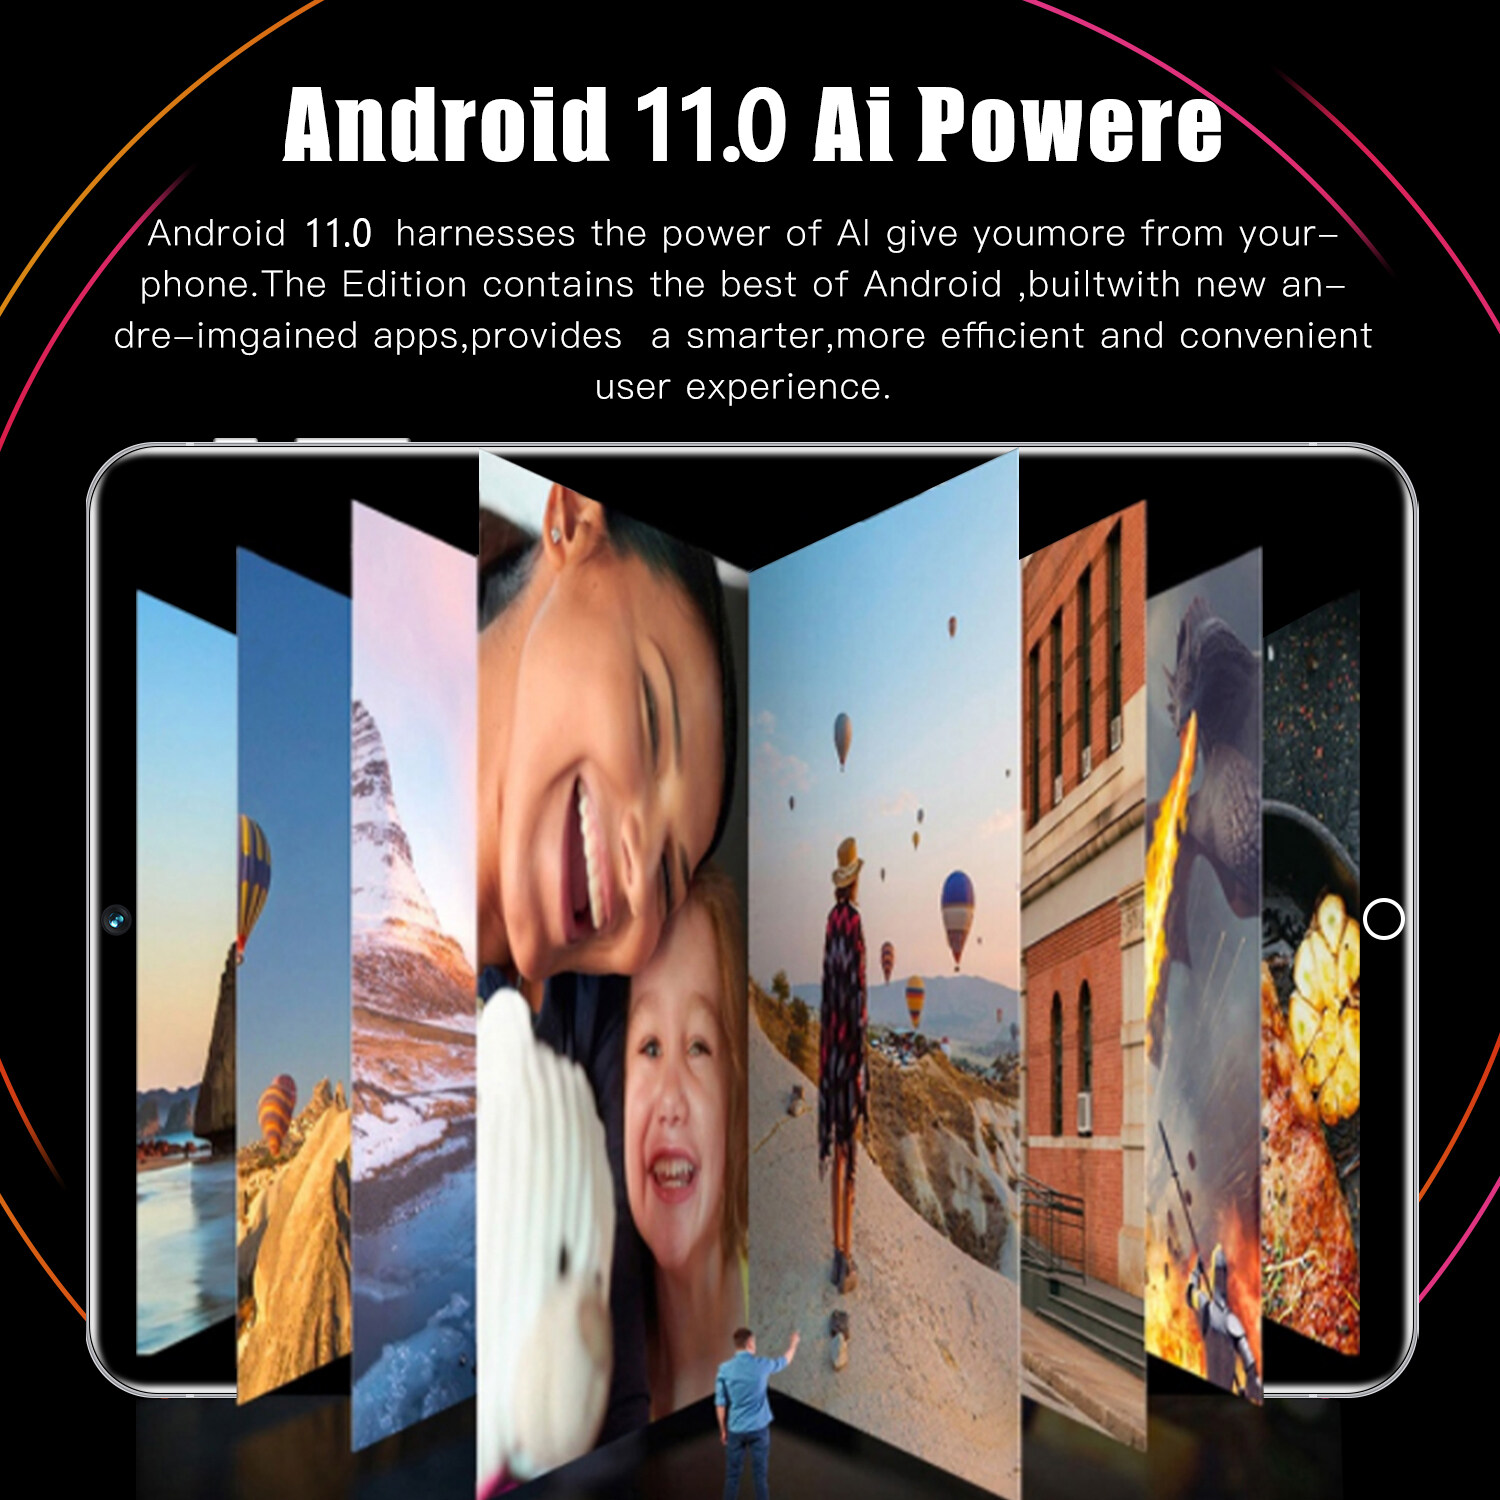 เกี่ยวกับ 【รับประกัน 1 ปี】ของแท้ Sansumg 12 Pro 11.6 นิ้ว แท็บเล็ต Tablet RAM16G+ROM512G 24+48MP Full HD แท็บเล็ตพีซี Android12.0 แท็บเล็ต WIFI 4G/5G หน่วยประมวลผล แท็บเล็ตของแท้ 10-core หน้าจอ ไอเเพ็ด แท็บเล็ตราคาถูก ส่งฟรี ipad ไอแพด แท็บเล็ตของแท้ 11pro